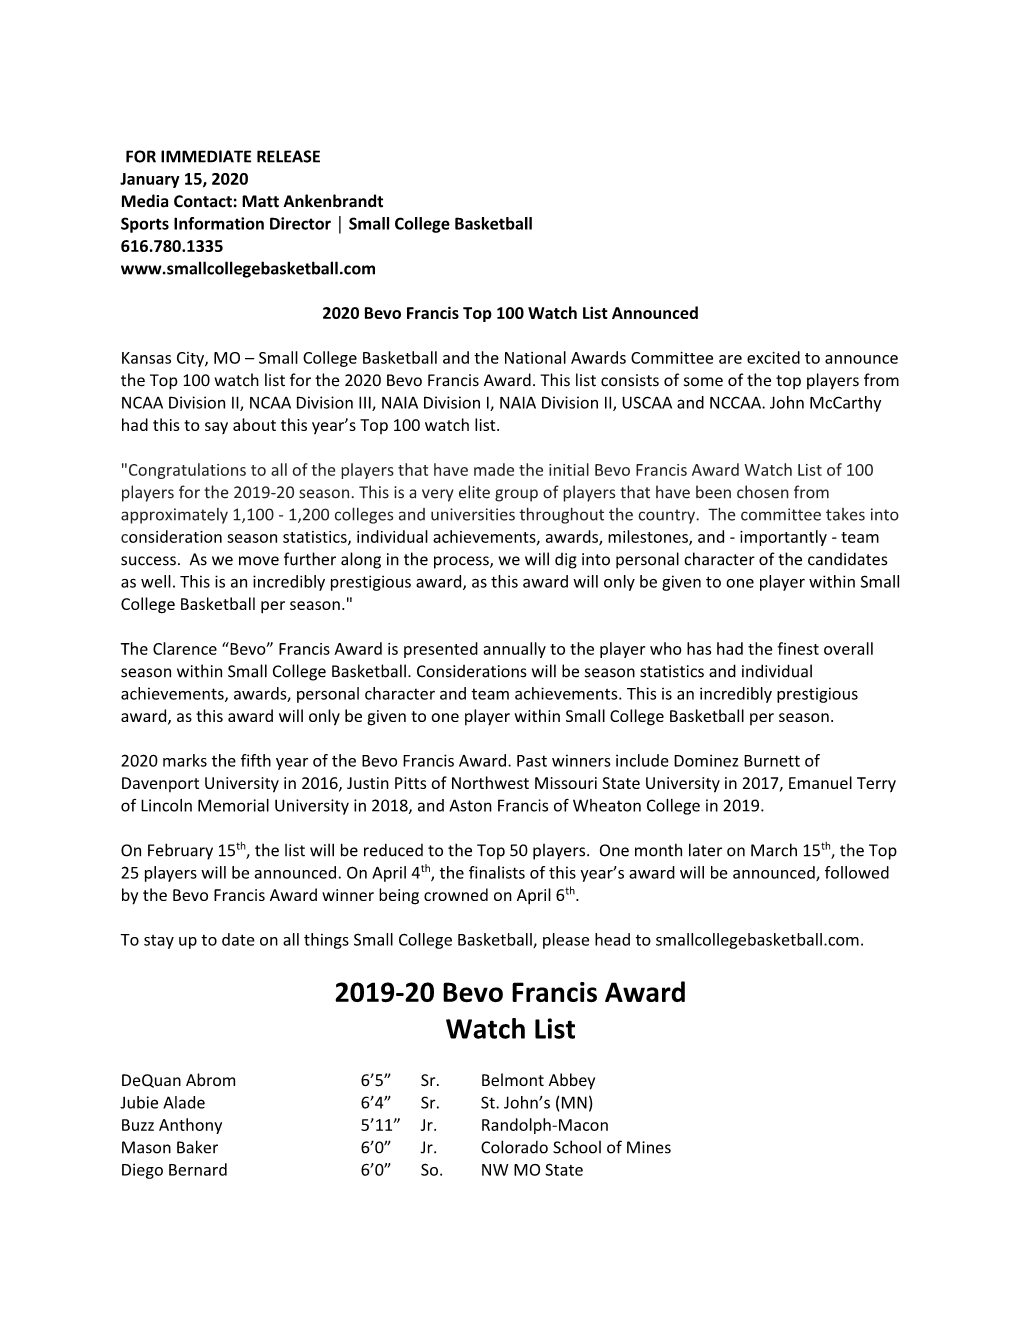 2019-20 Bevo Francis Award Watch List